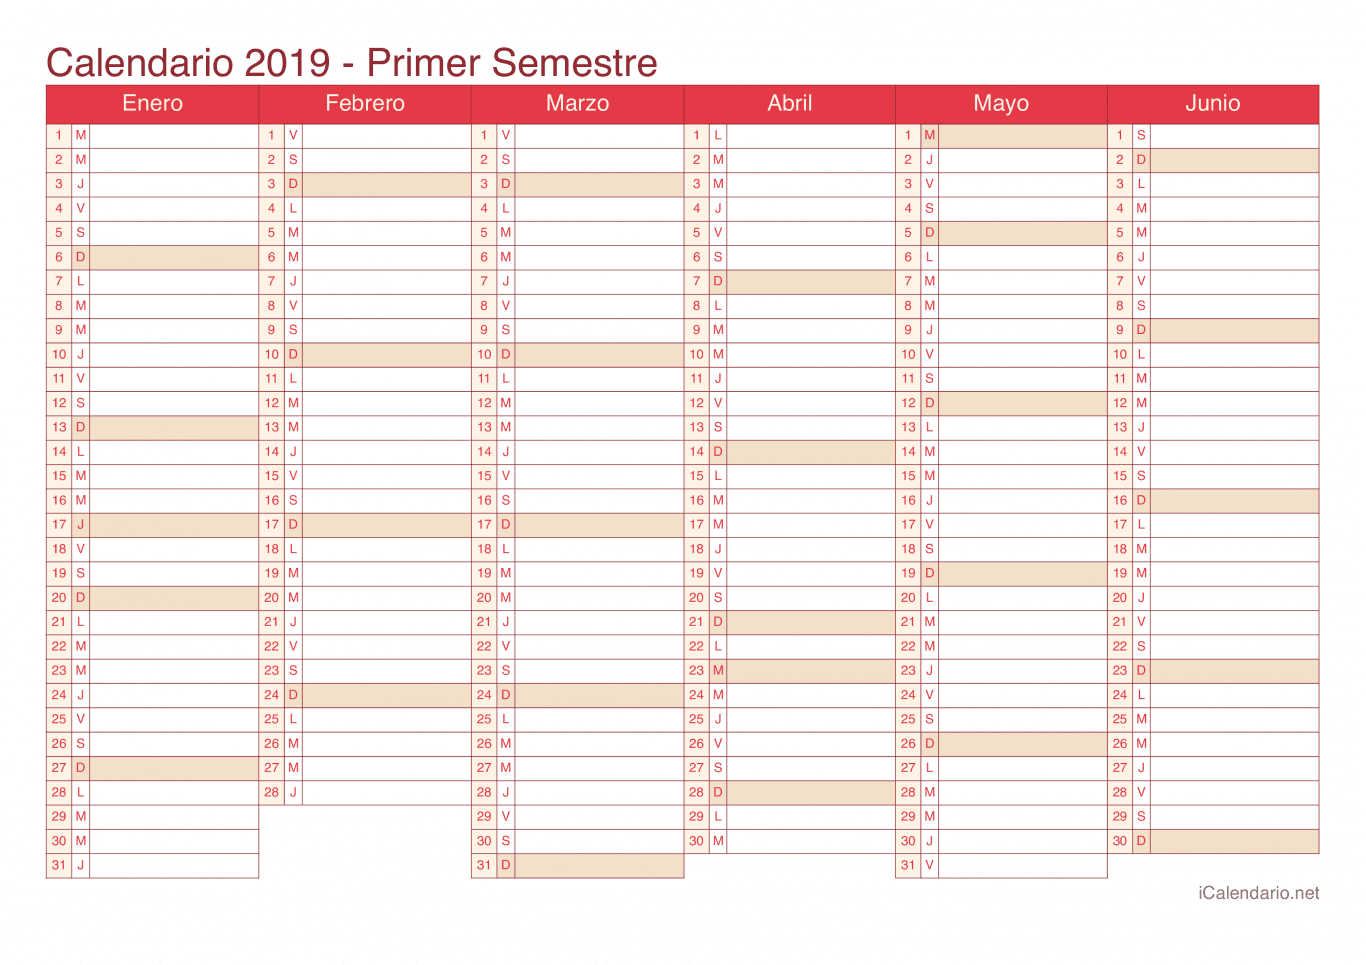 Calendario por semestre 2019 - Cherry